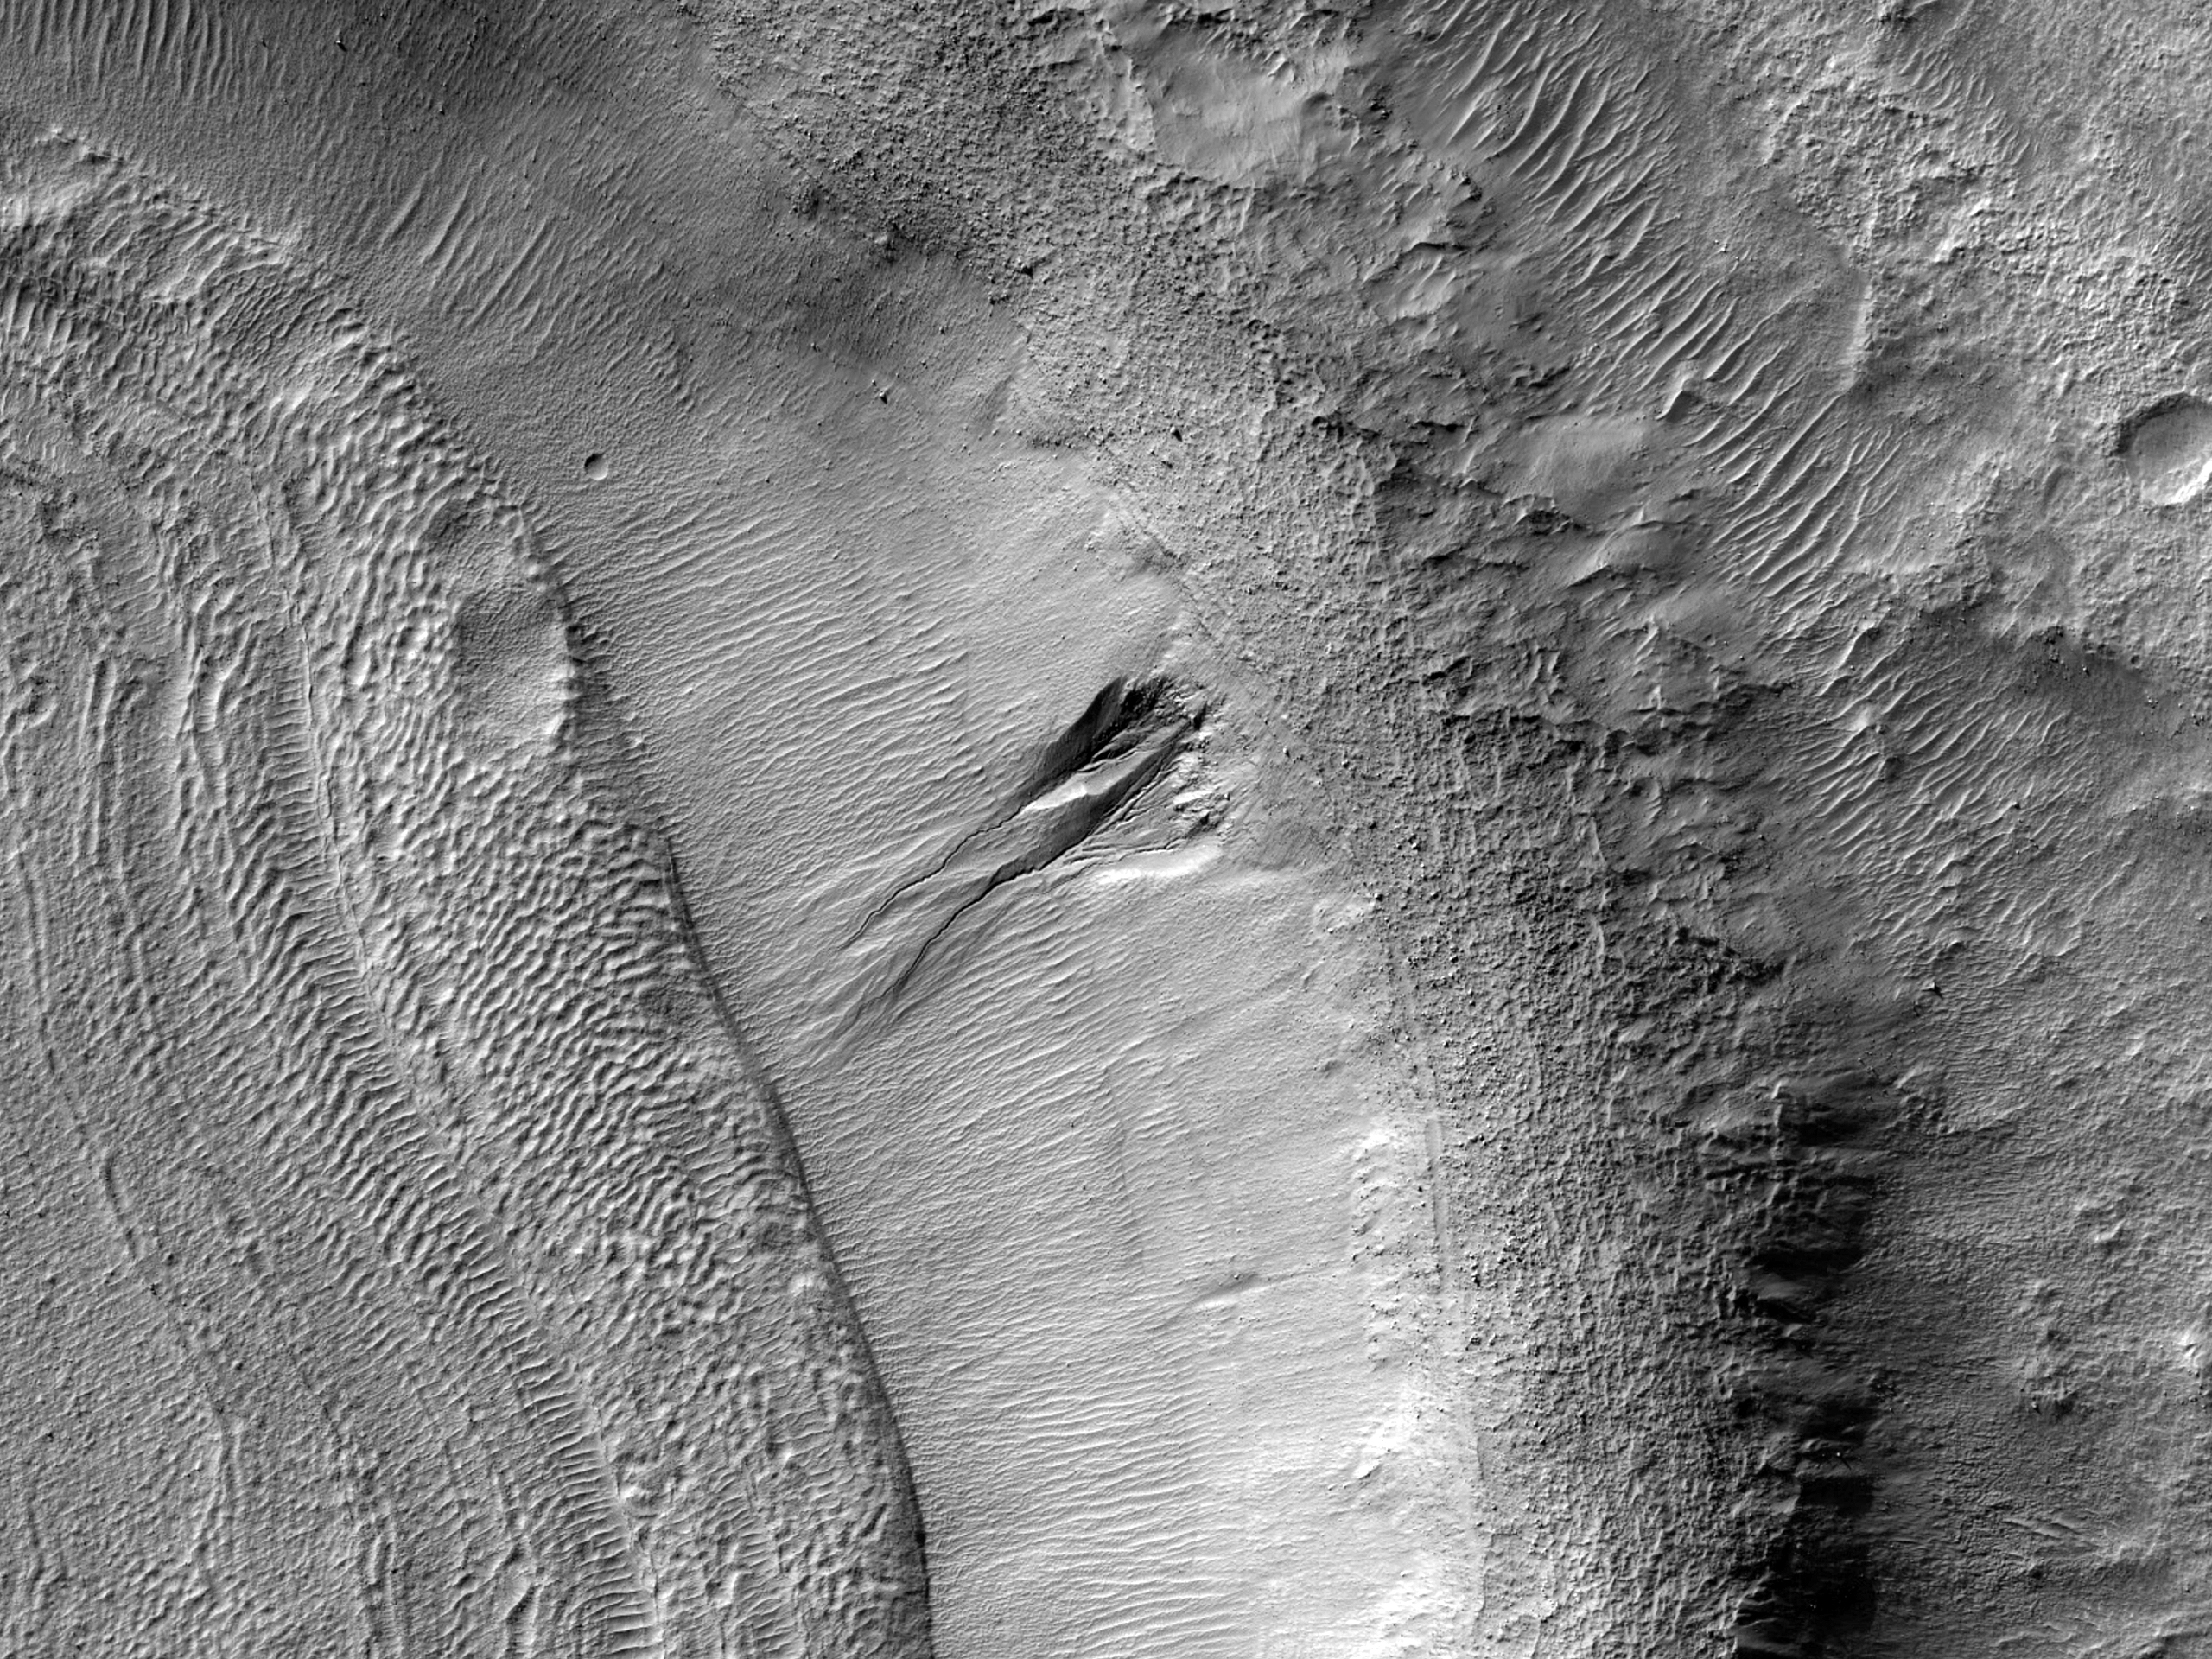 Склоны кратера Arrhenius